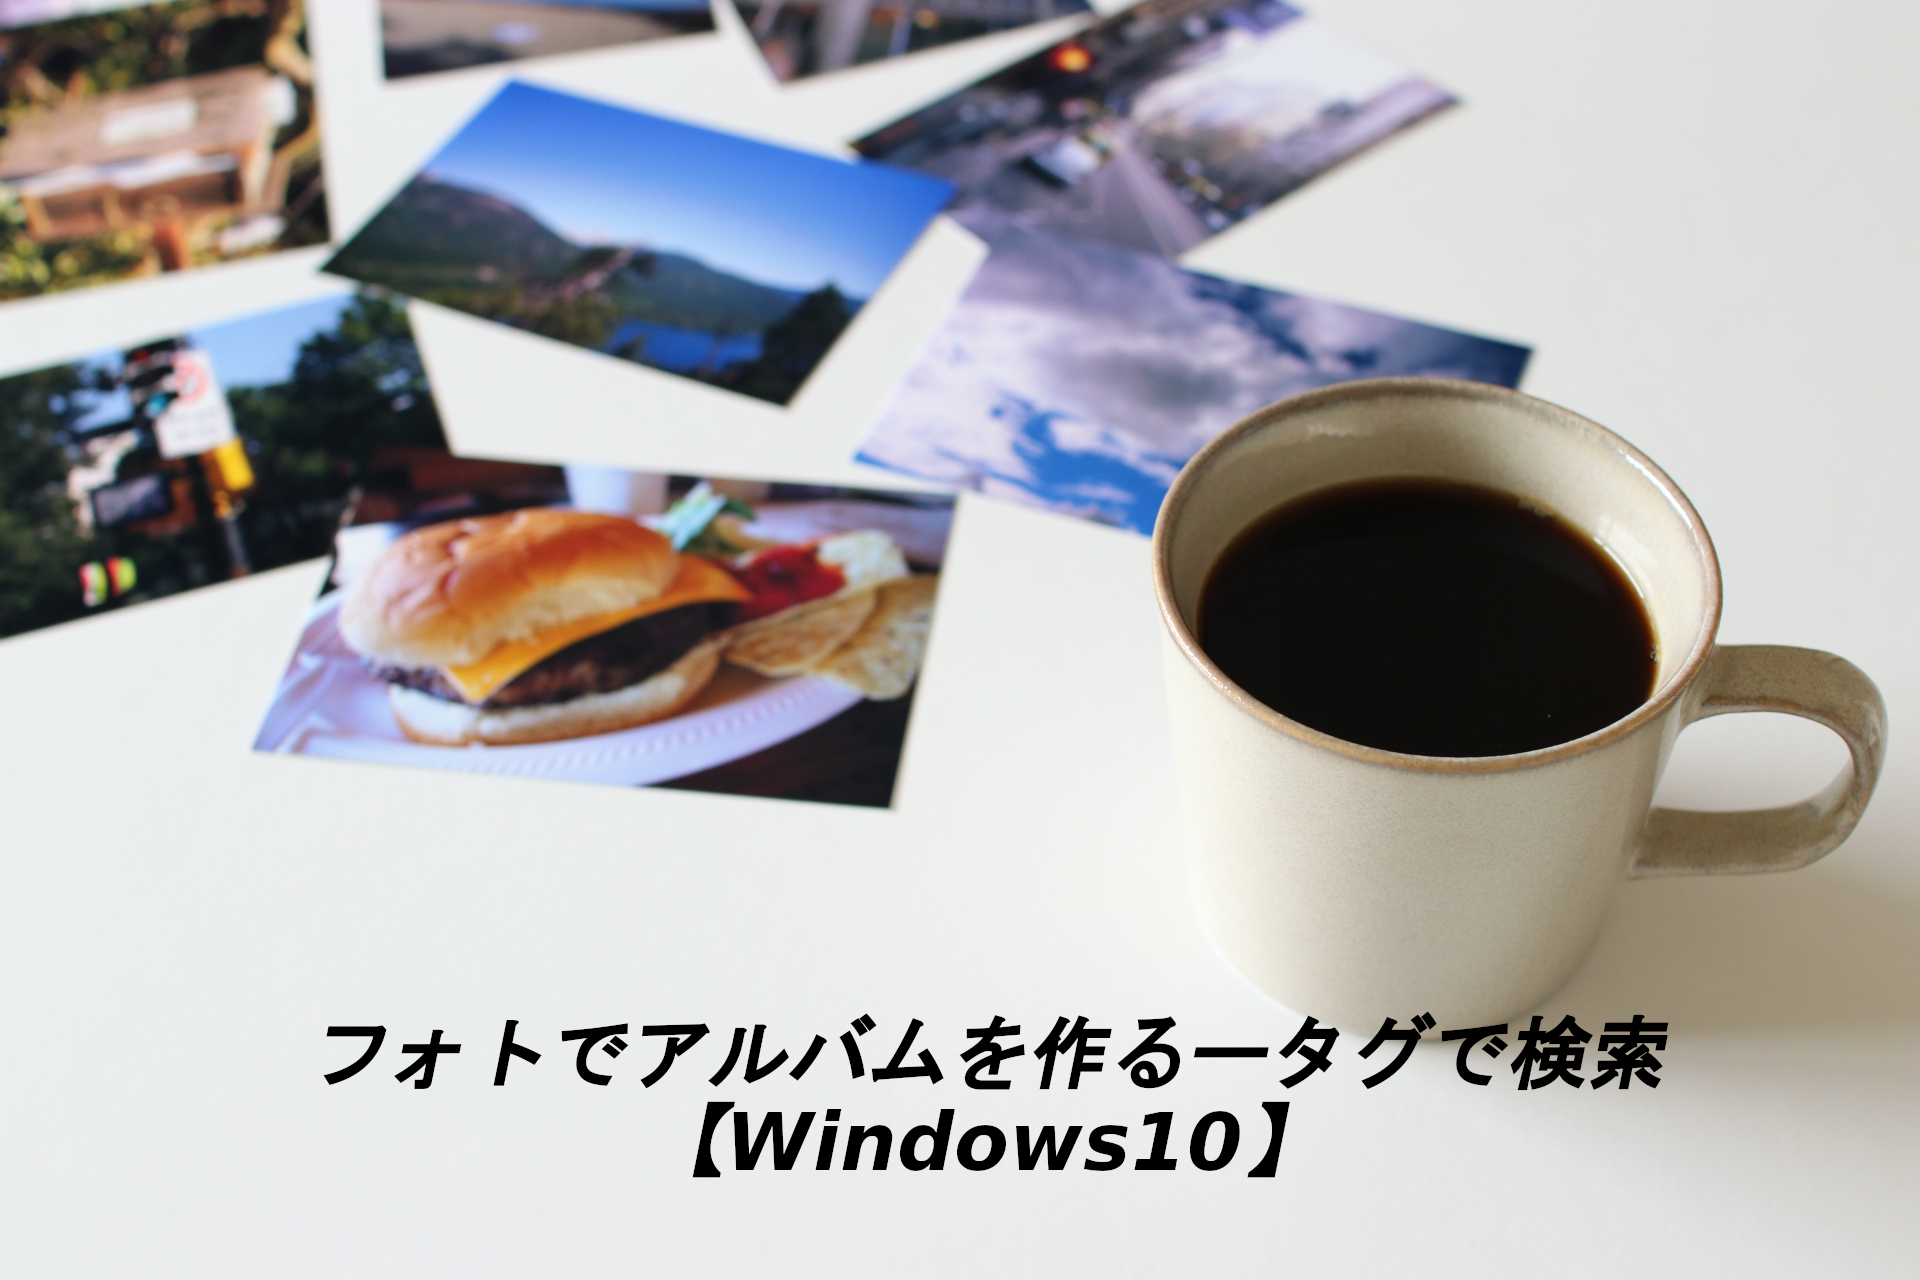 フォトでアルバムを作るータグで検索【Windows10】